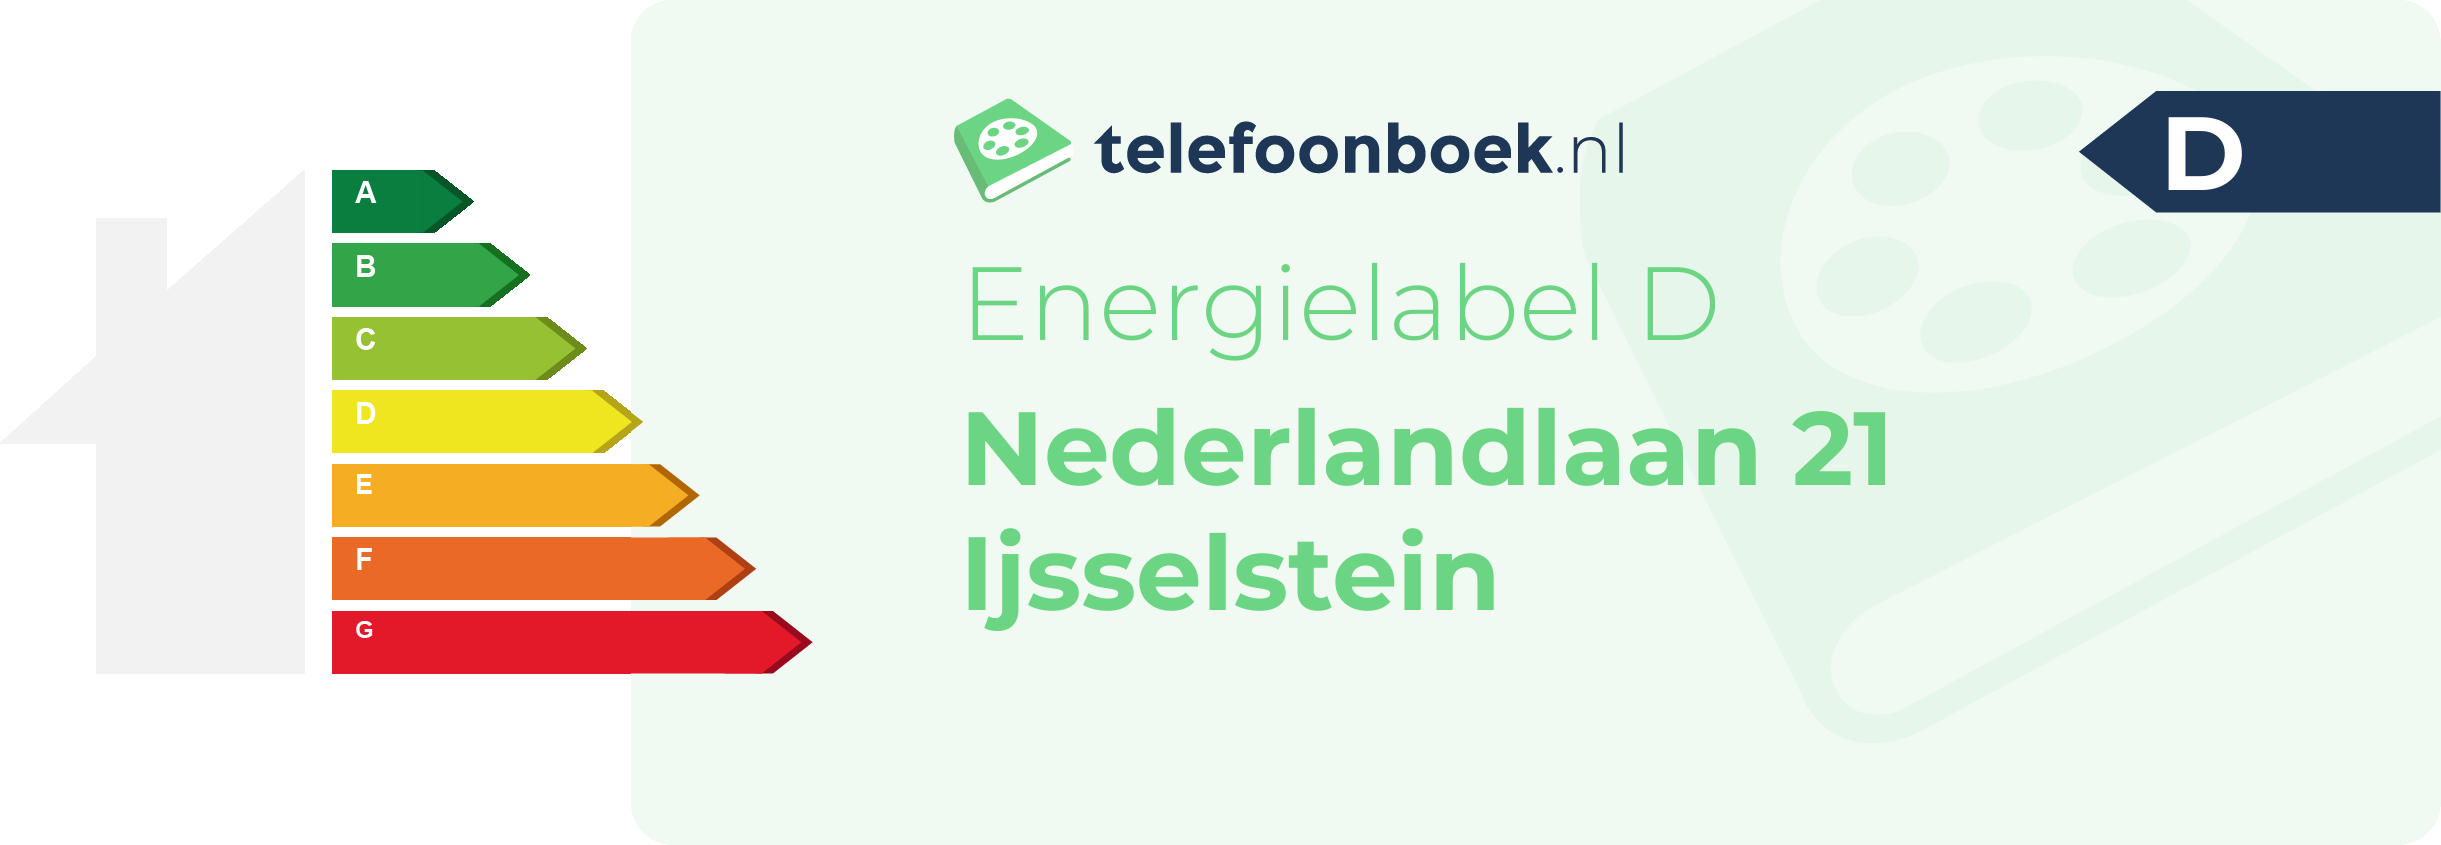 Energielabel Nederlandlaan 21 Ijsselstein